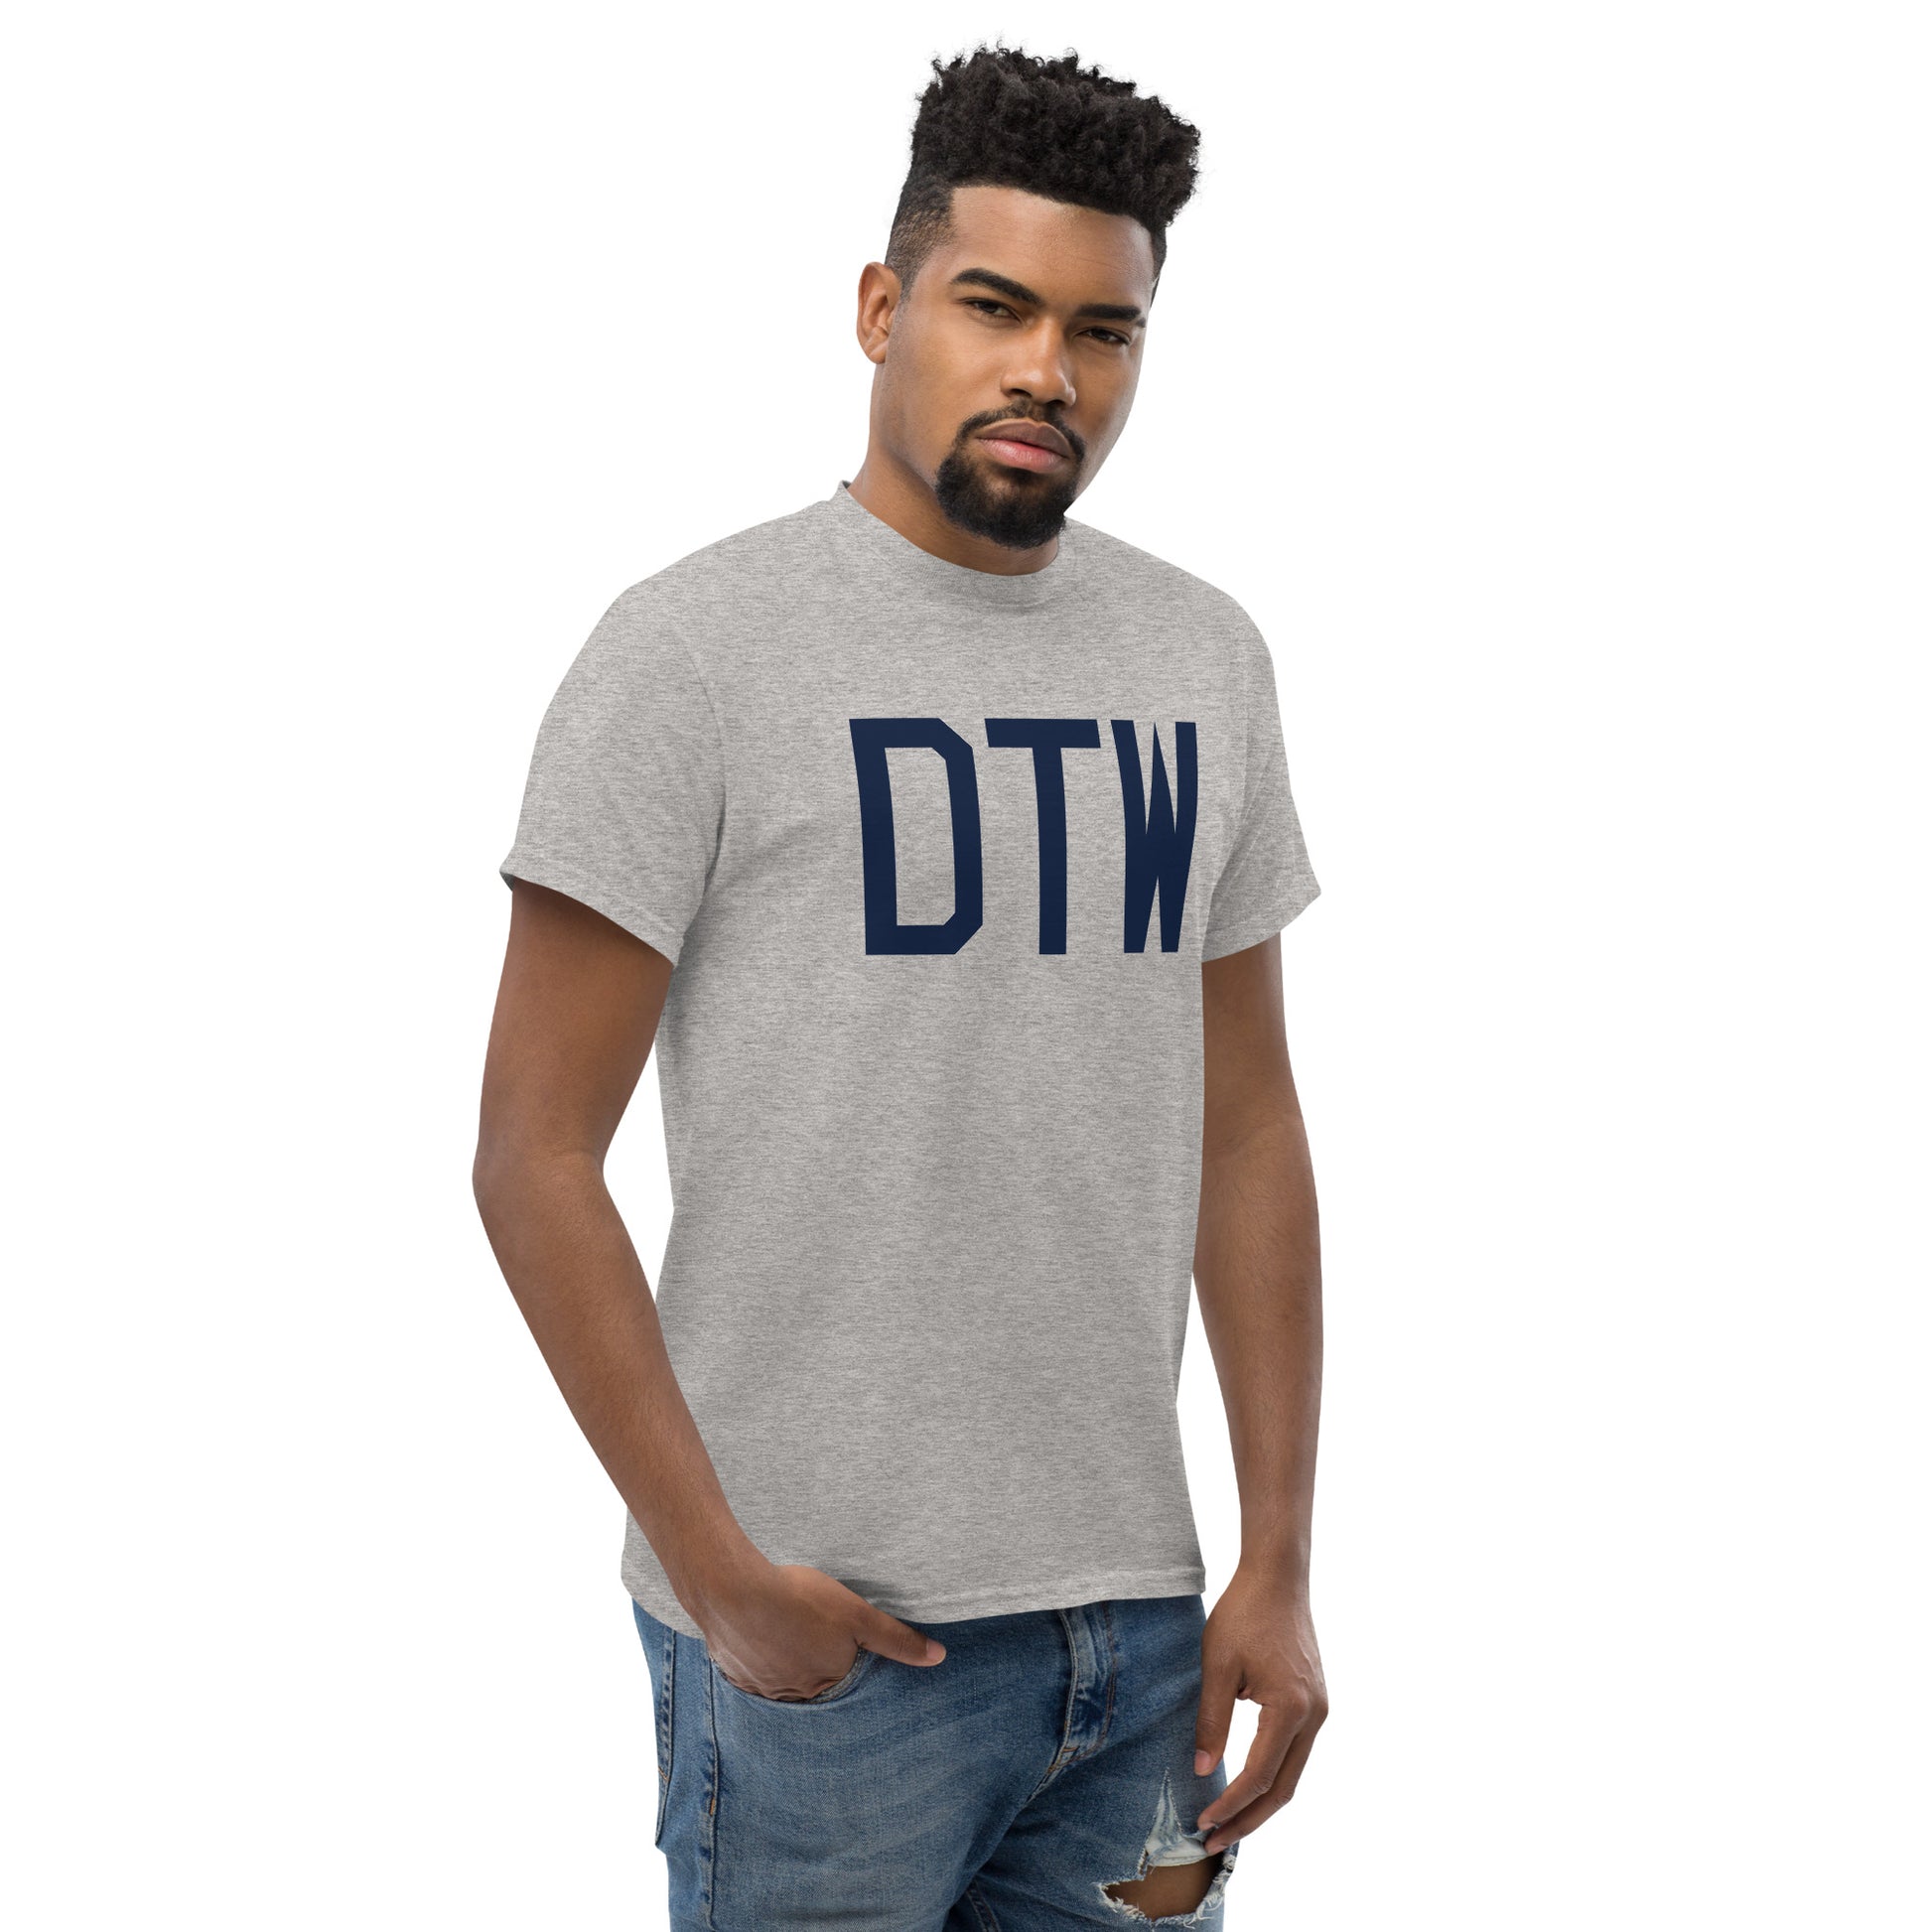 Aviation-Theme Men's T-Shirt - Navy Blue Graphic • DTW Detroit • YHM Designs - Image 08